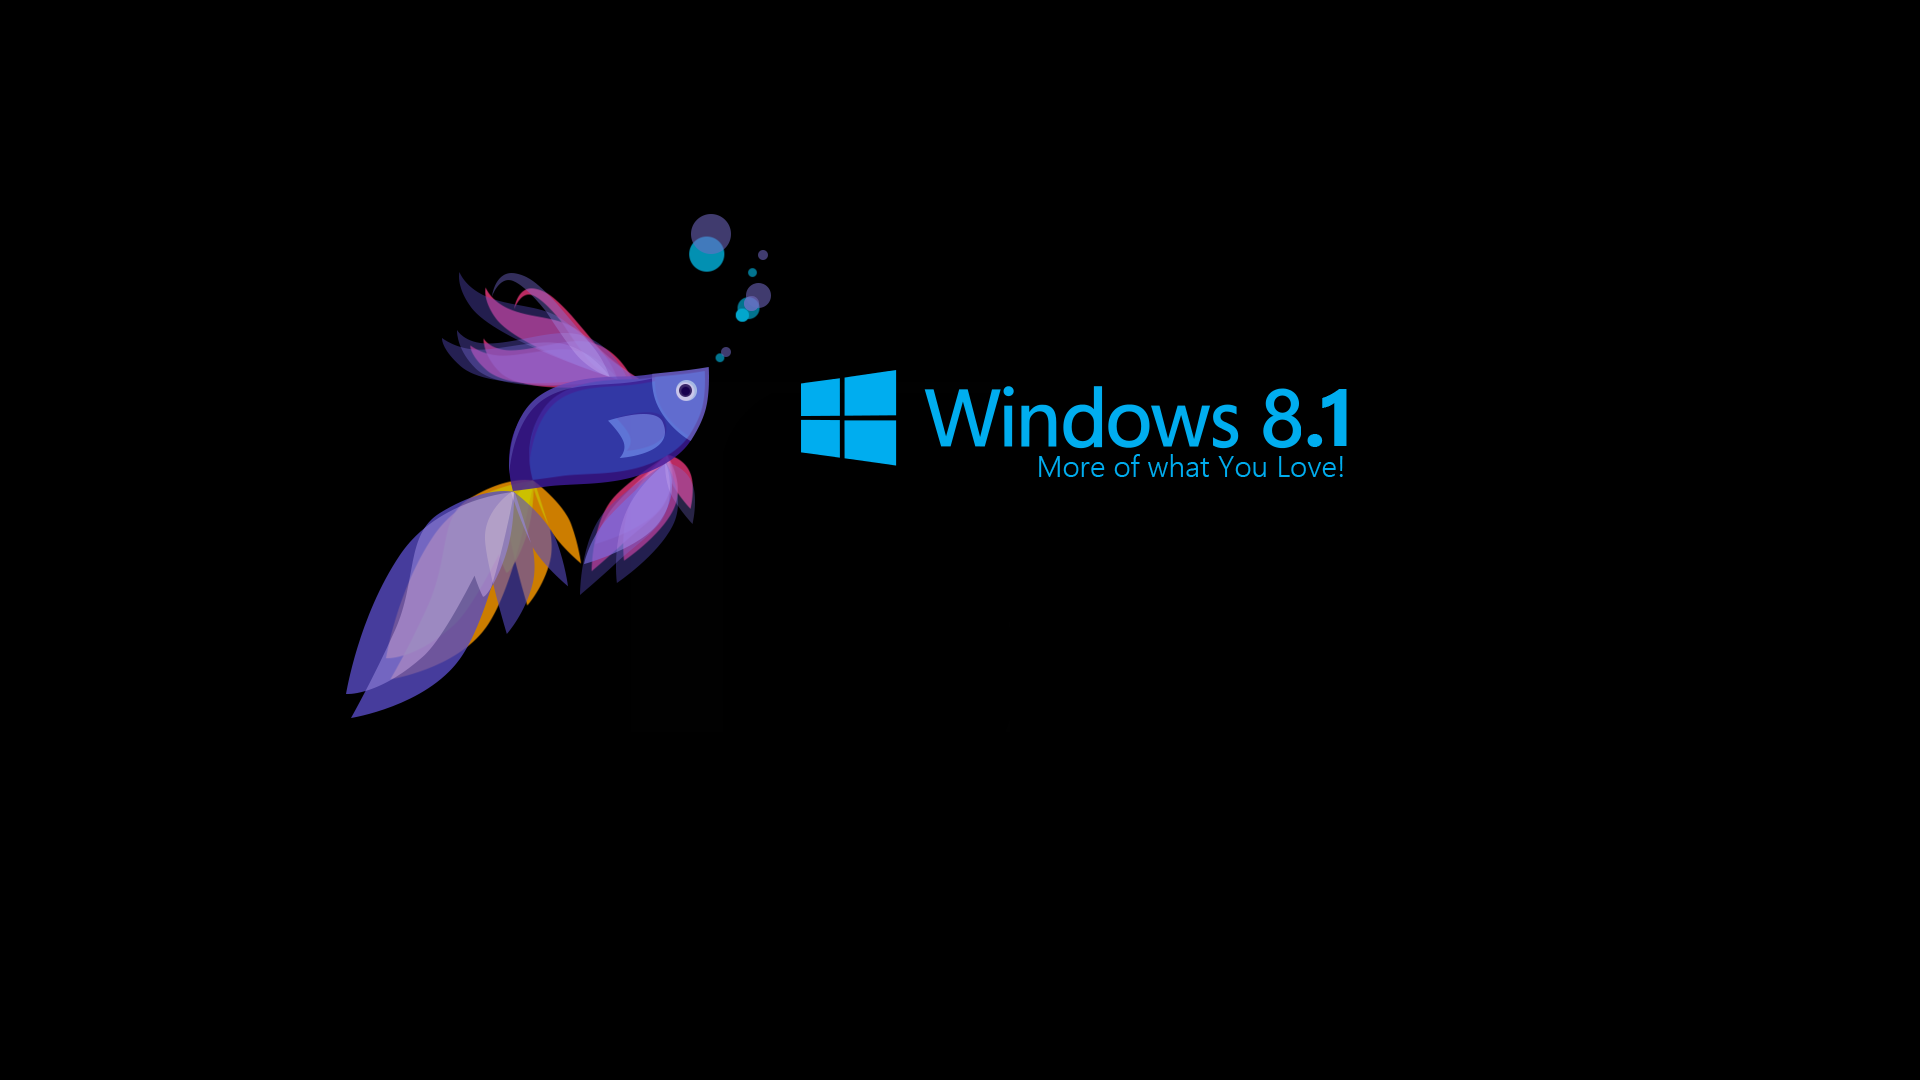 HD Wallpapers for Windows 8 - PixelsTalk.Net